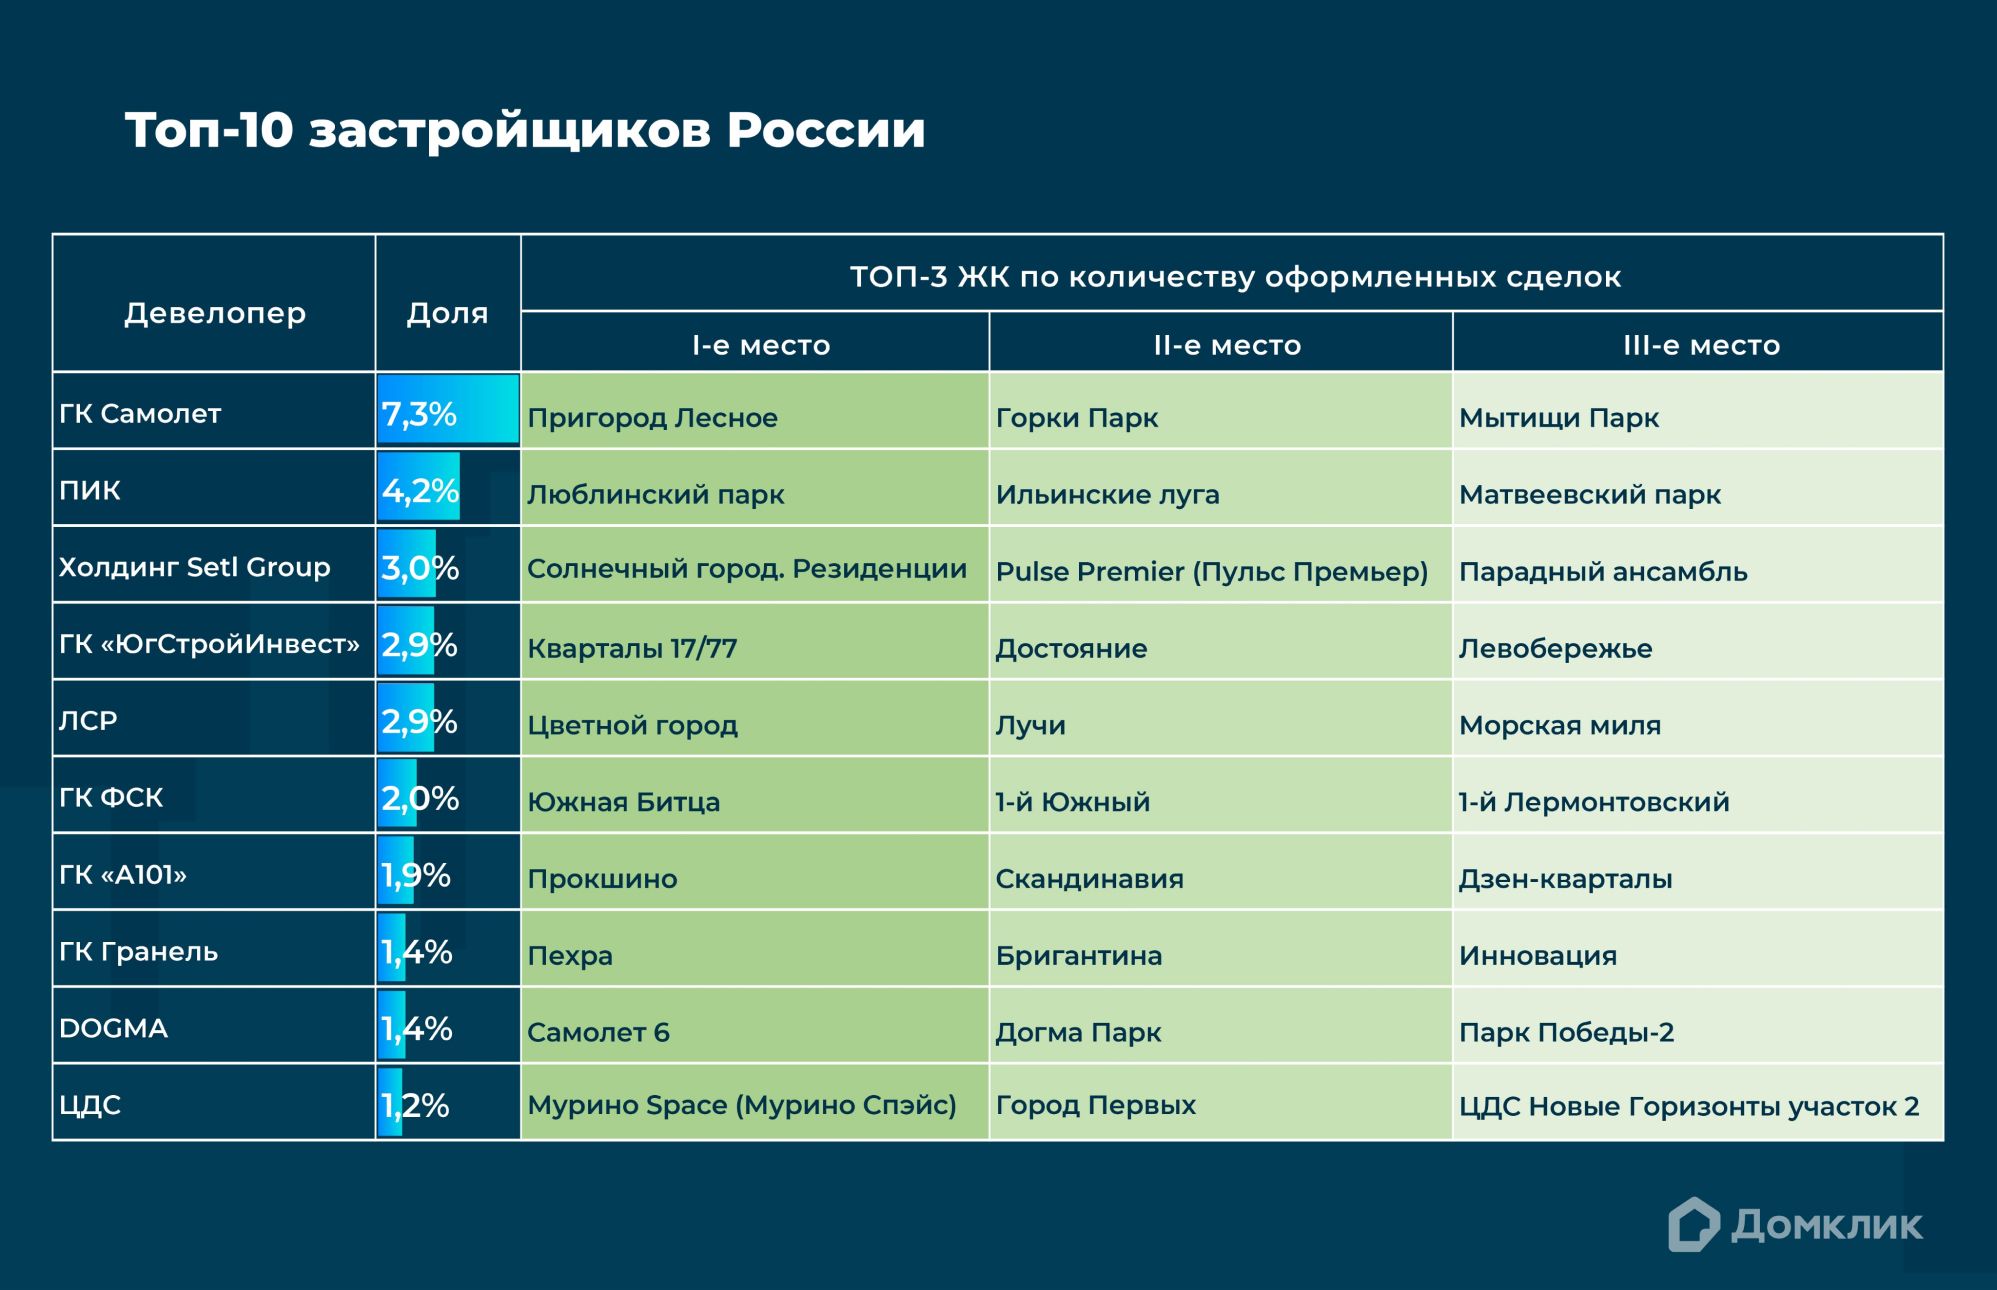 Топ-10 девелоперов России по количеству сделок, проведённых с участием Сбербанка, включая сделки за свои средства.